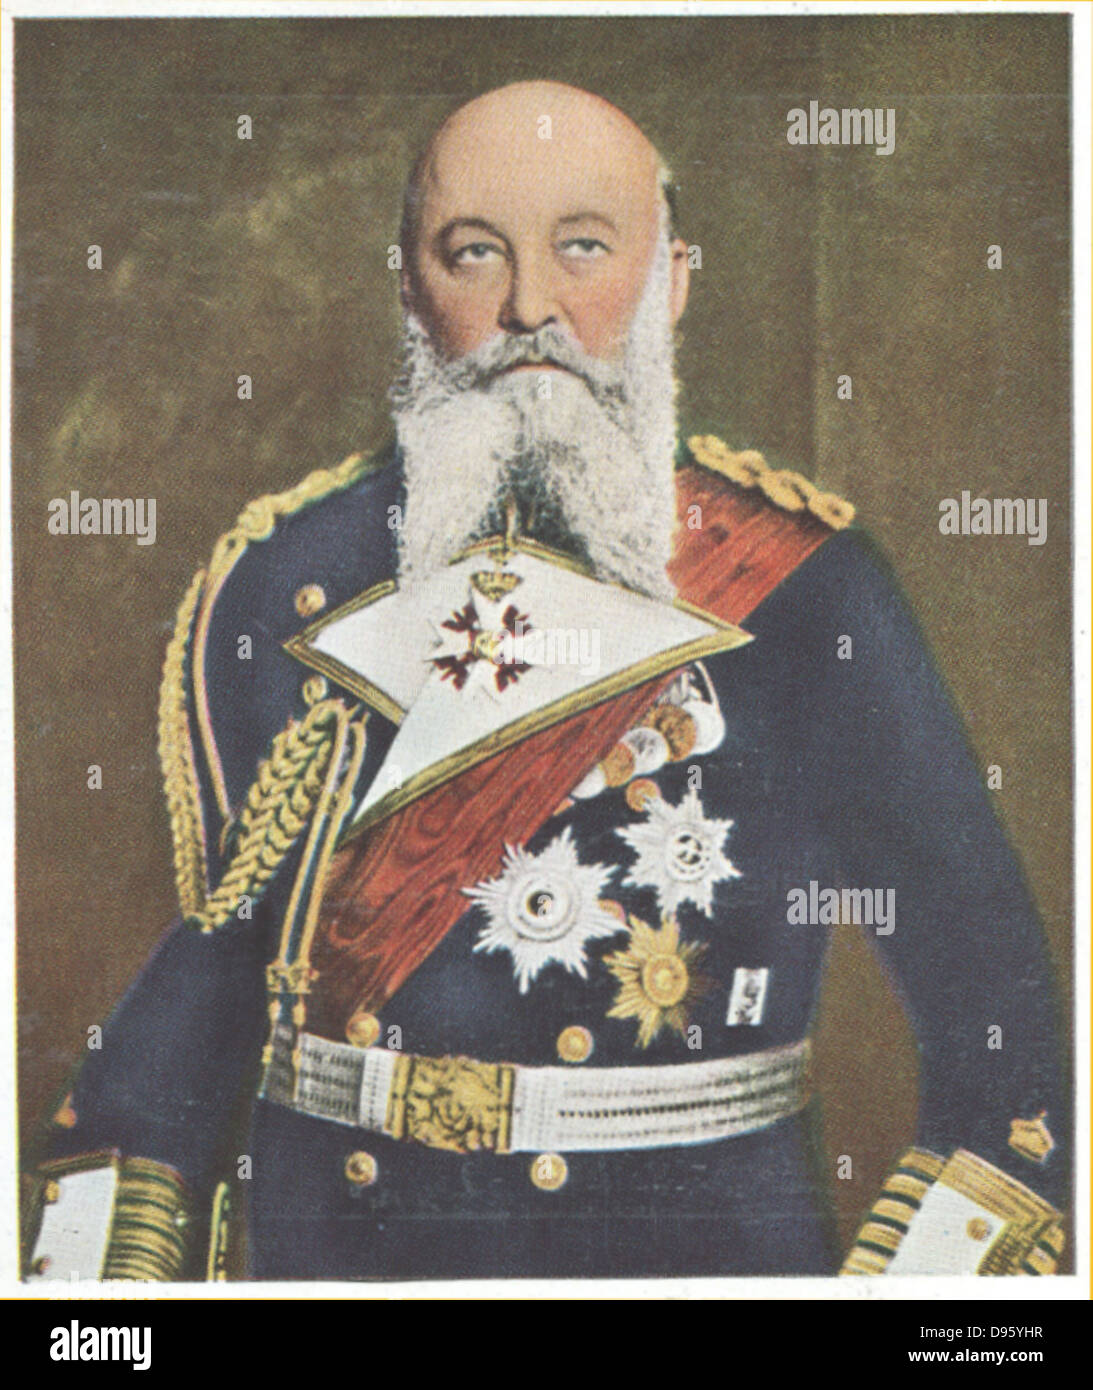 Alfred Friedrich von Turpitz (1849-1930), tedesco comandante navale. Nominato Segretario di Stato di Imperiale Marina militare tedesca nel 1897, è stato responsabile per la creazione di una flotta in grado di contestare la Marina britannica. Foto Stock